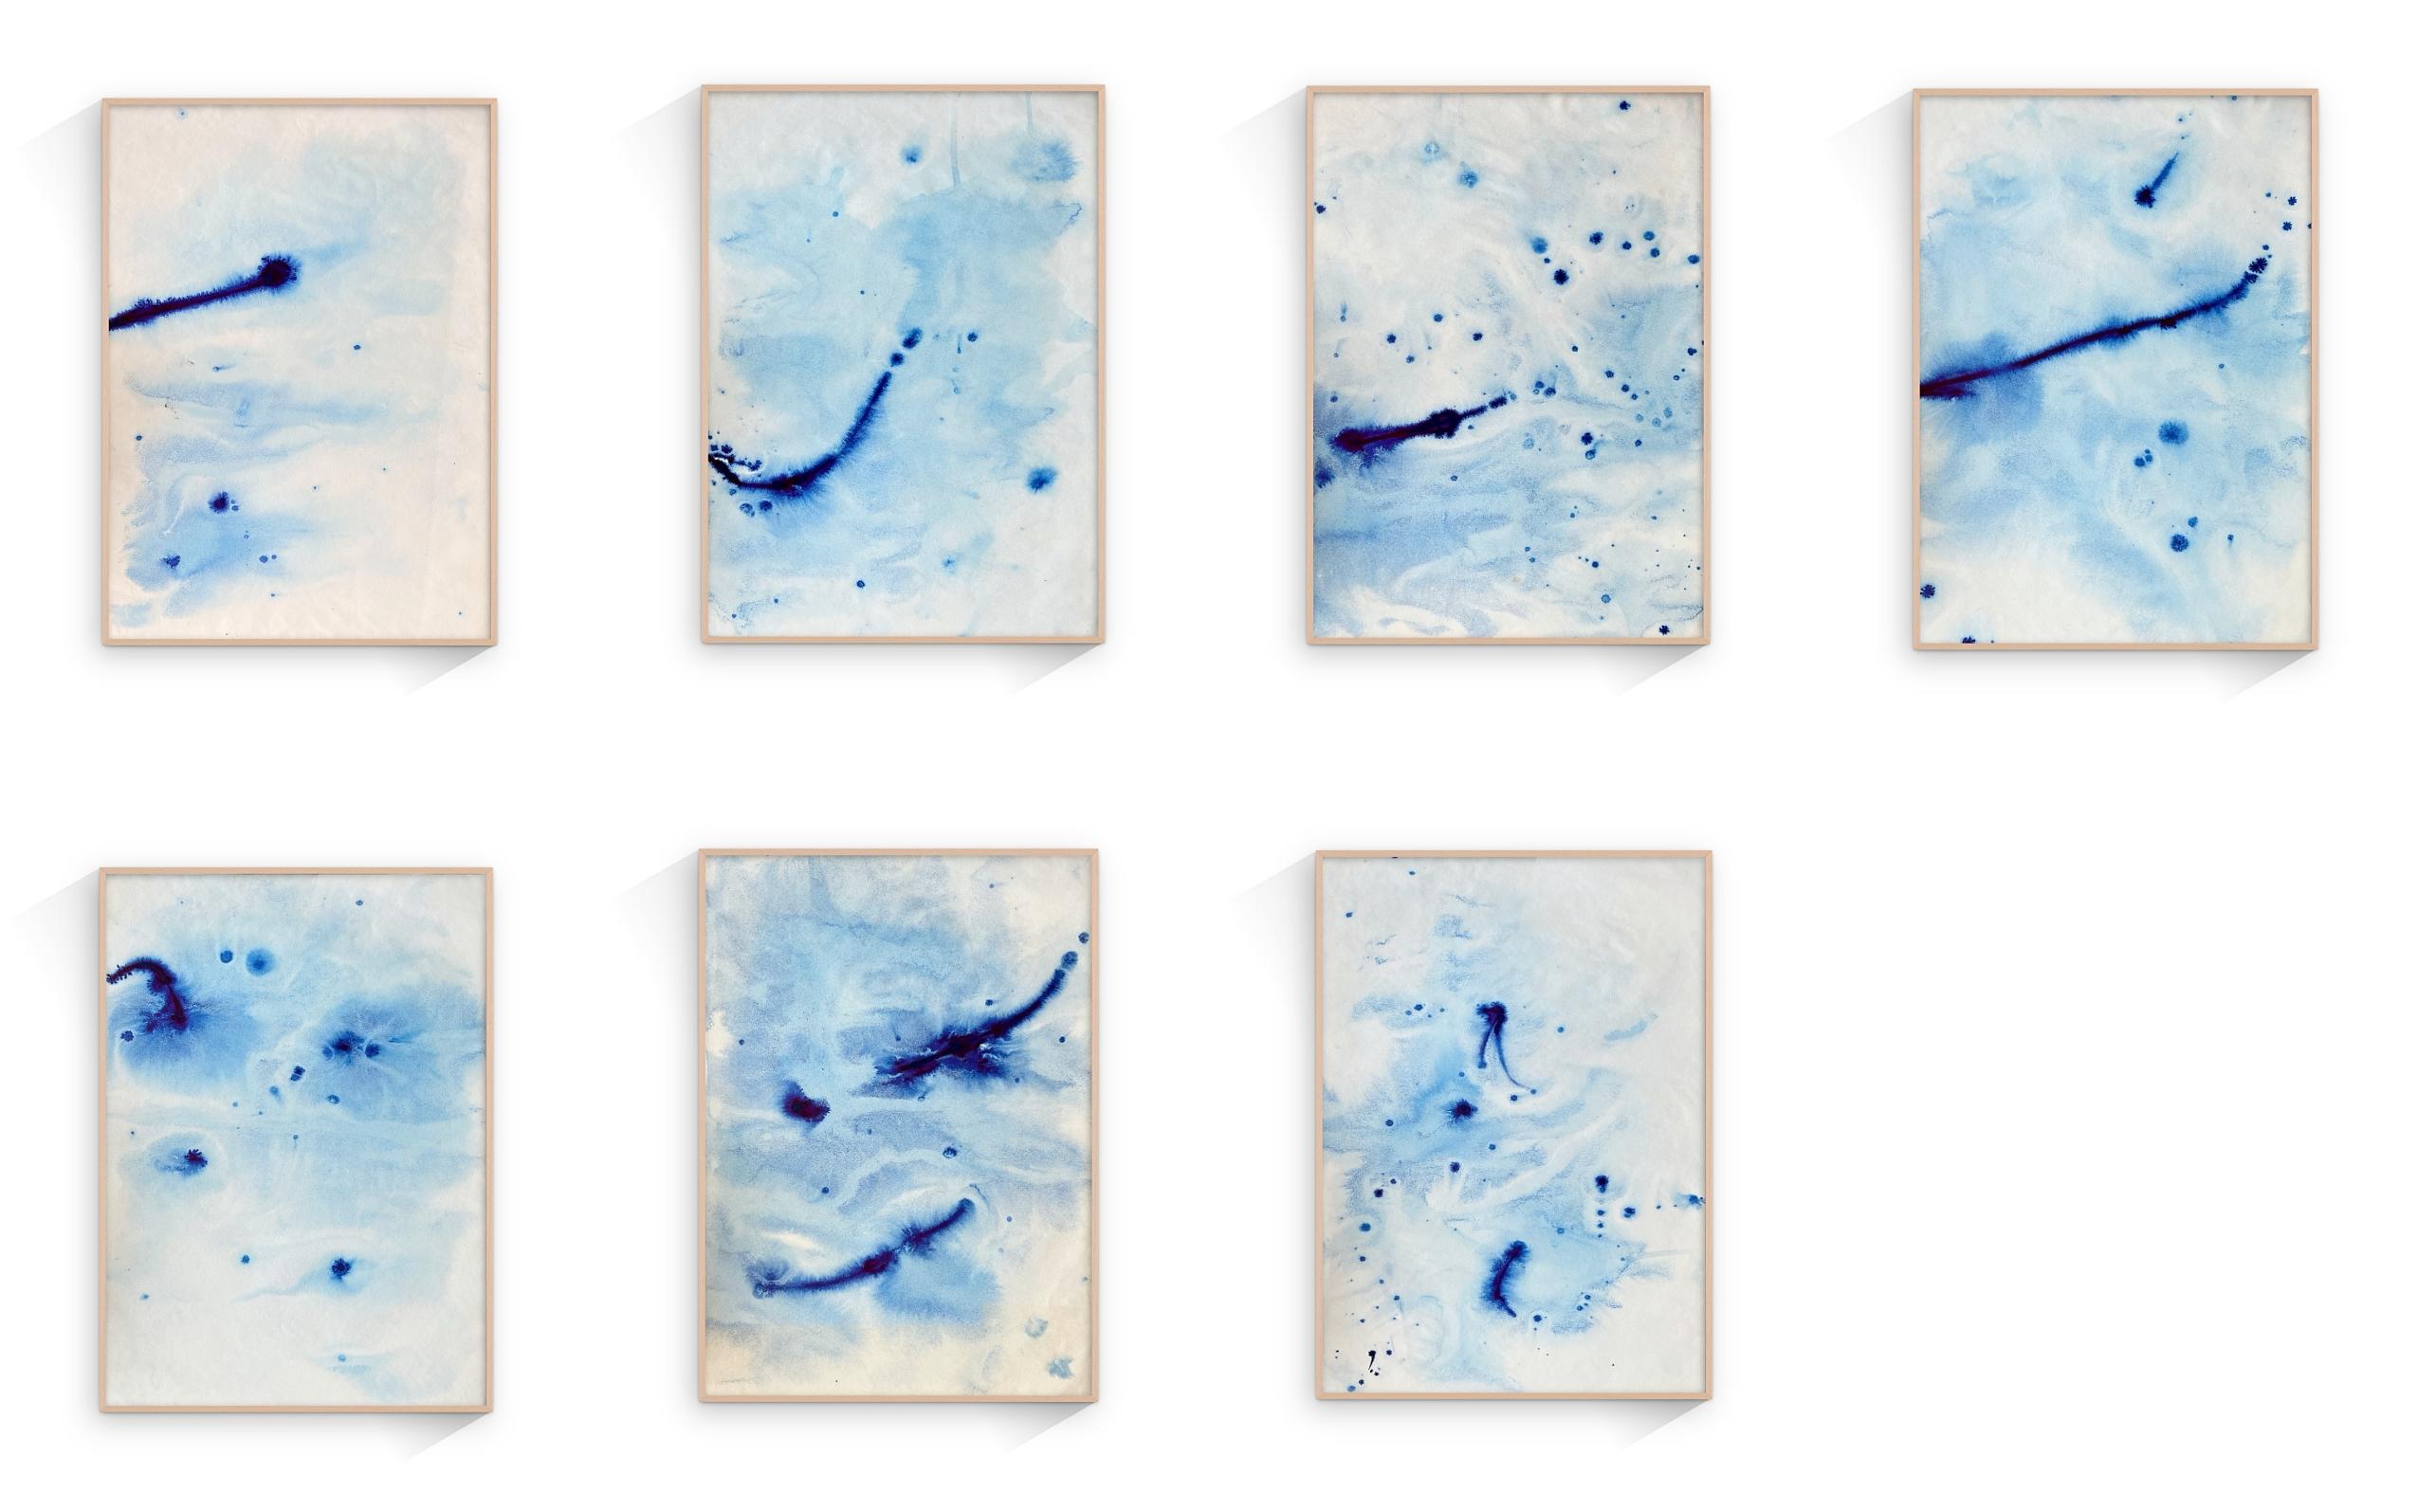 Waves de mer bleues méditerranéennes, peinture à l'encre faite à la main, Ripples Calming, édition limitée - Expressionnisme abstrait Painting par TUSET